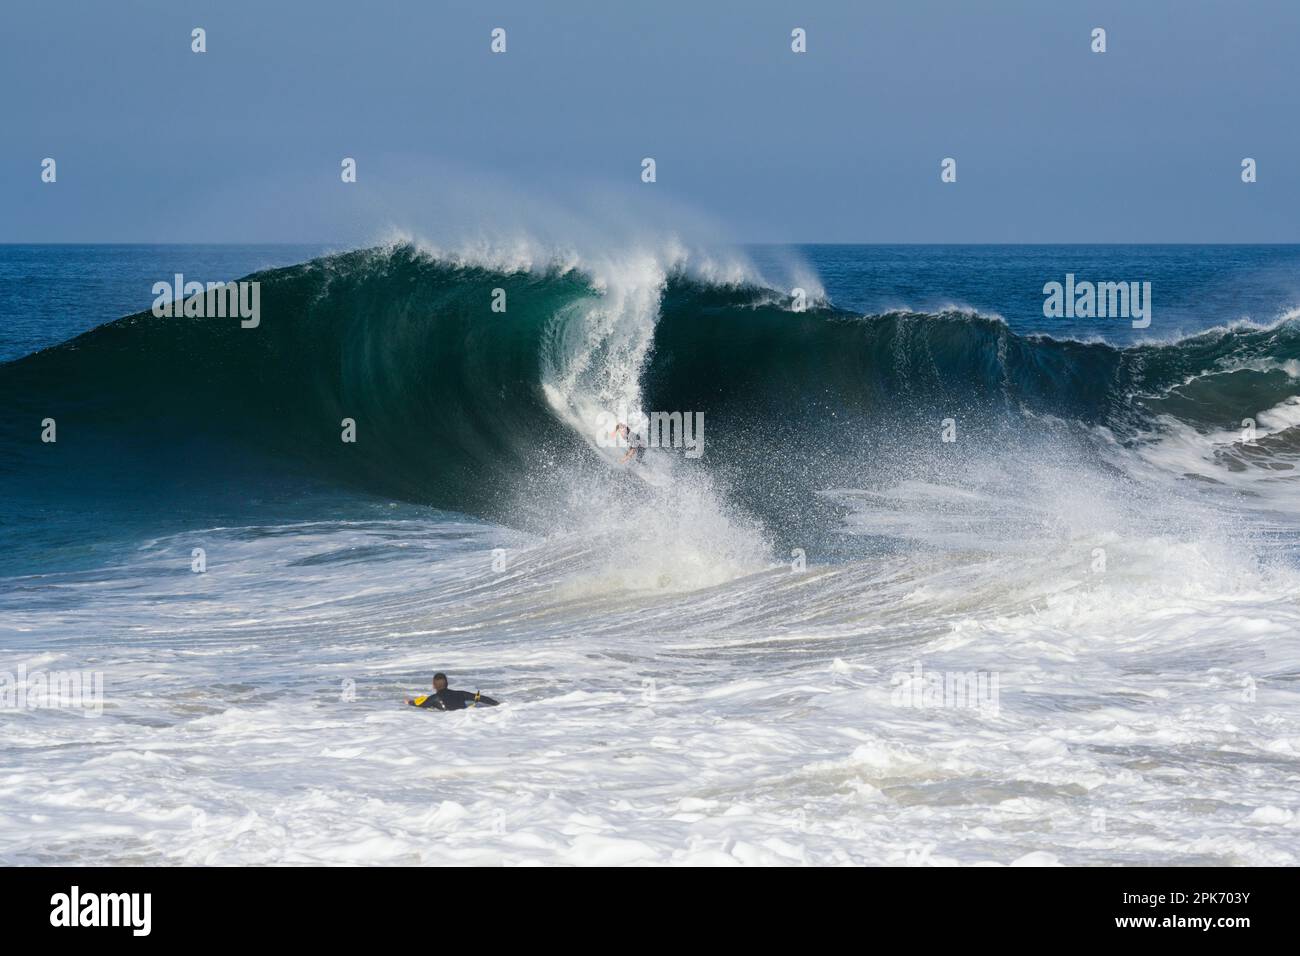 Hombre surfeando en ola grande, Newport Beach, California, EE.UU Foto de stock